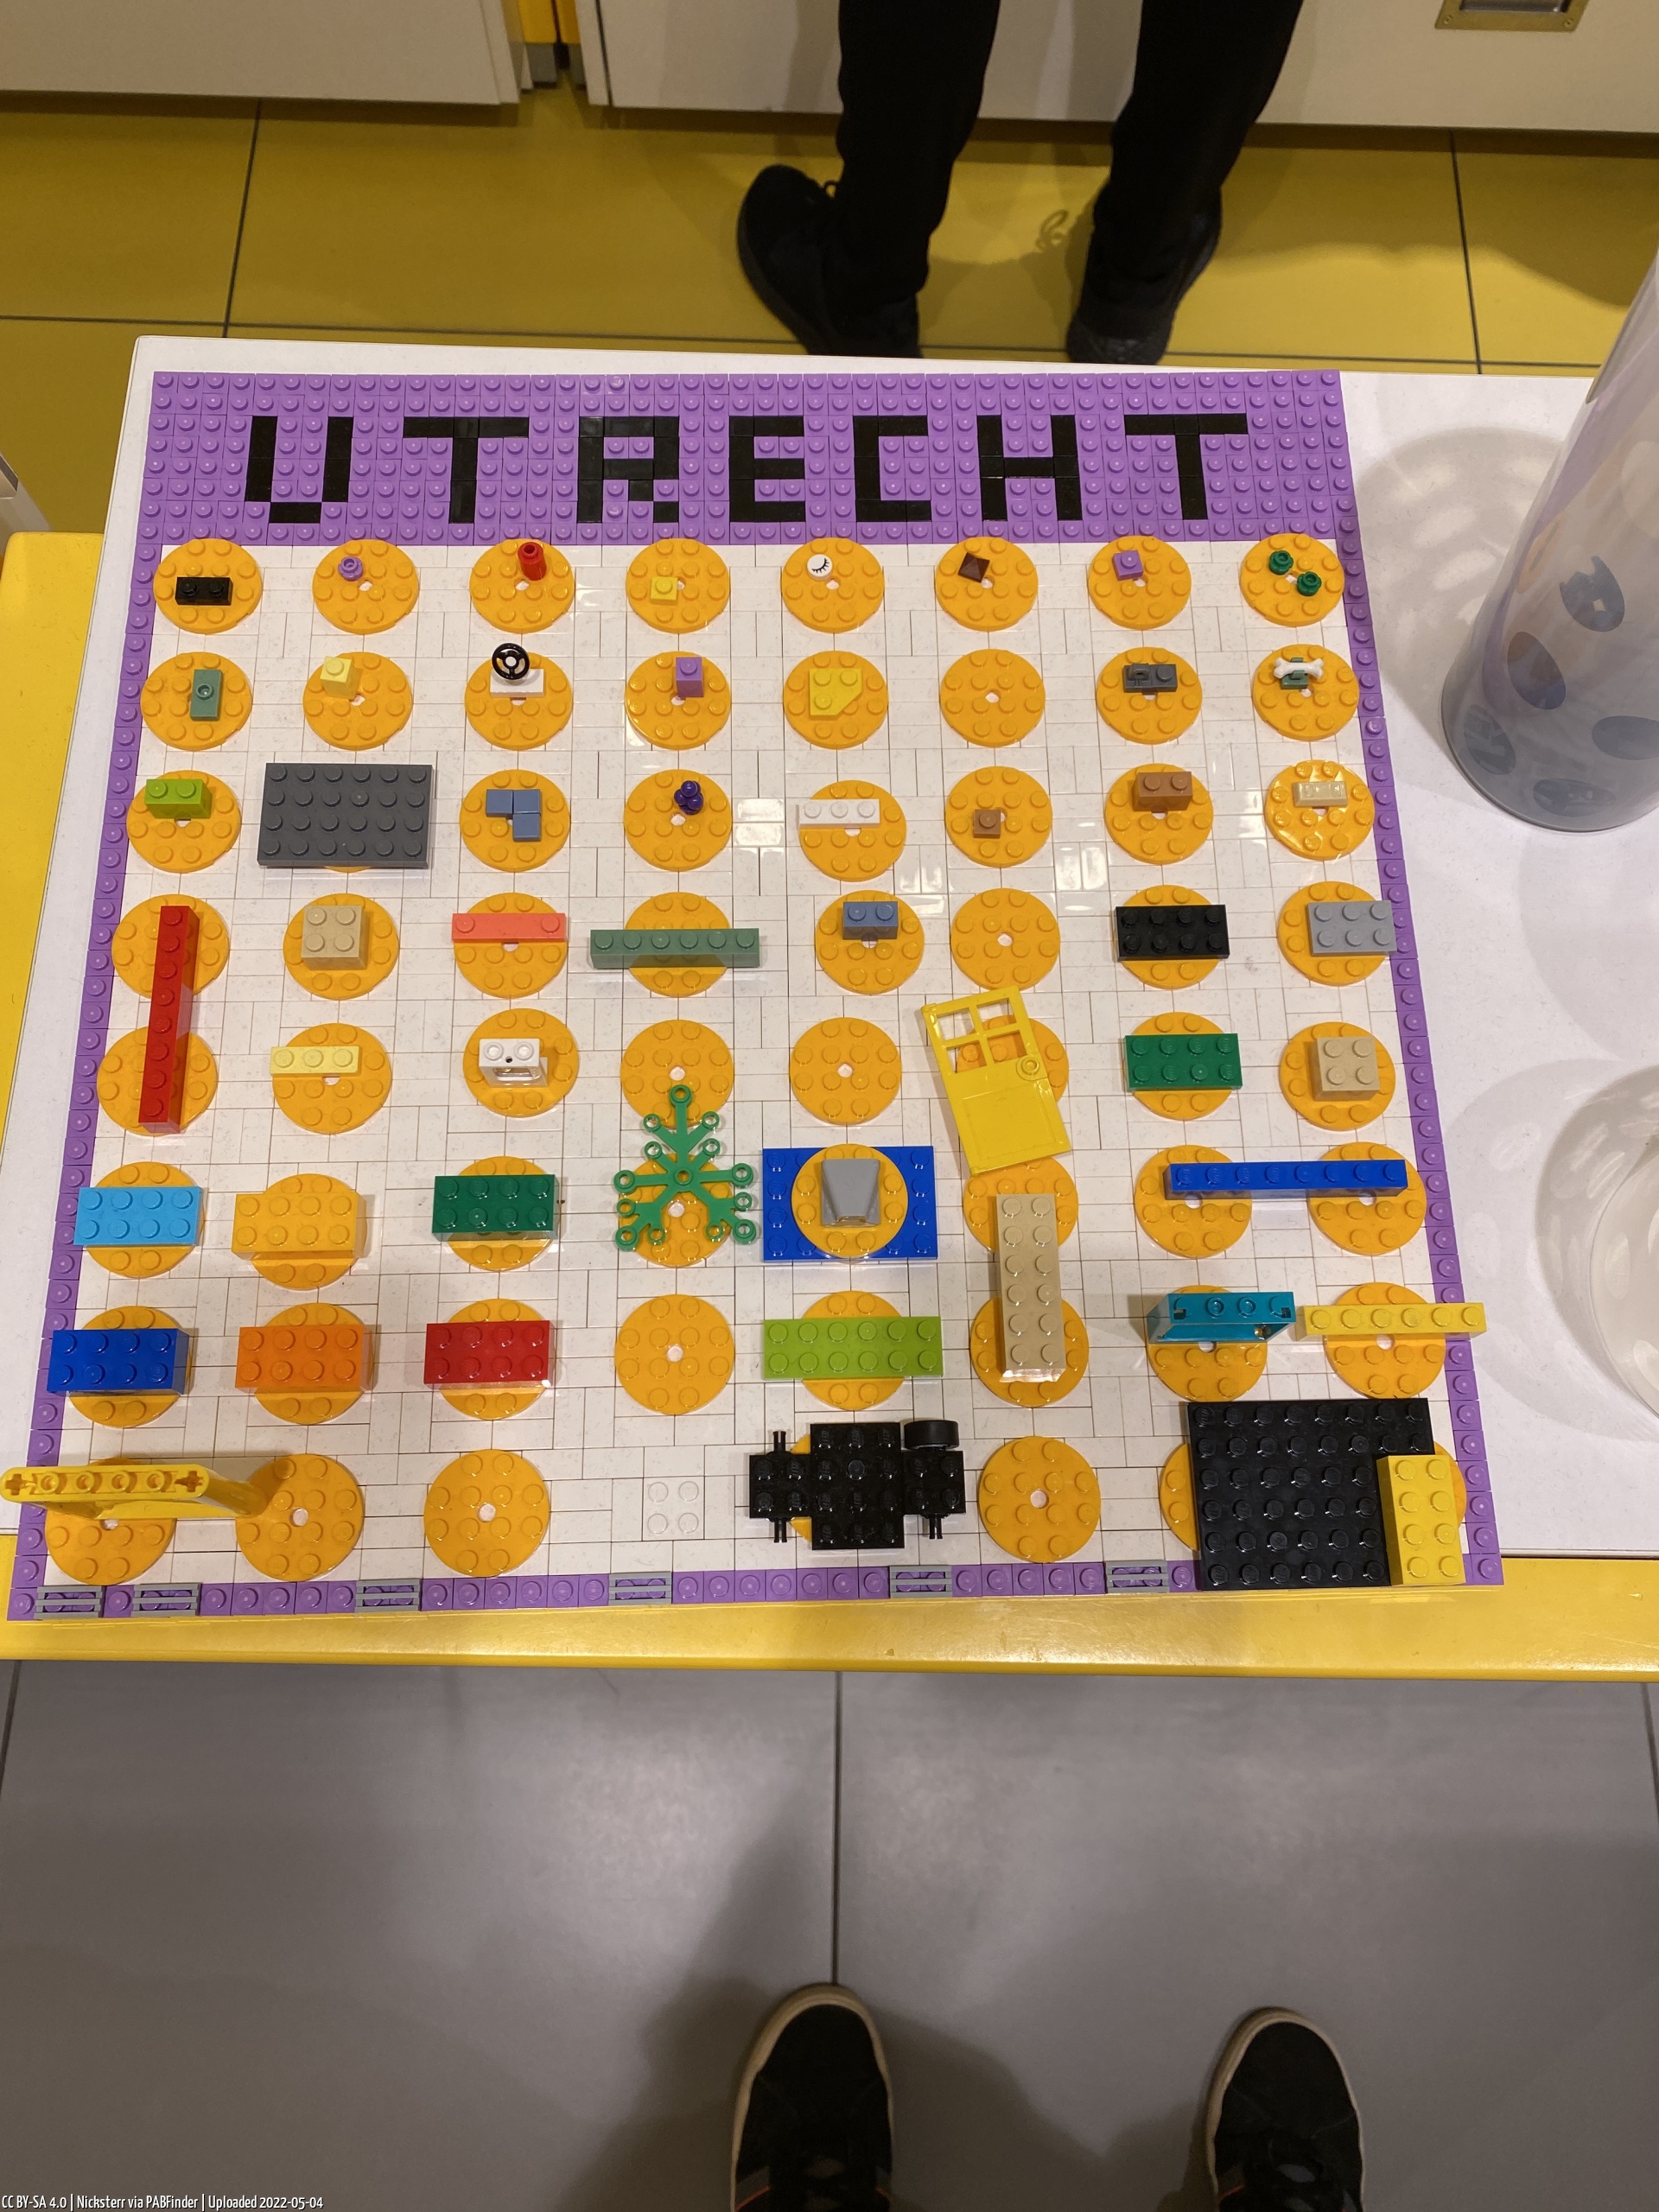 Pick a Brick Utrecht (Nicksterr, 5/4/22, 9:58:42 AM)